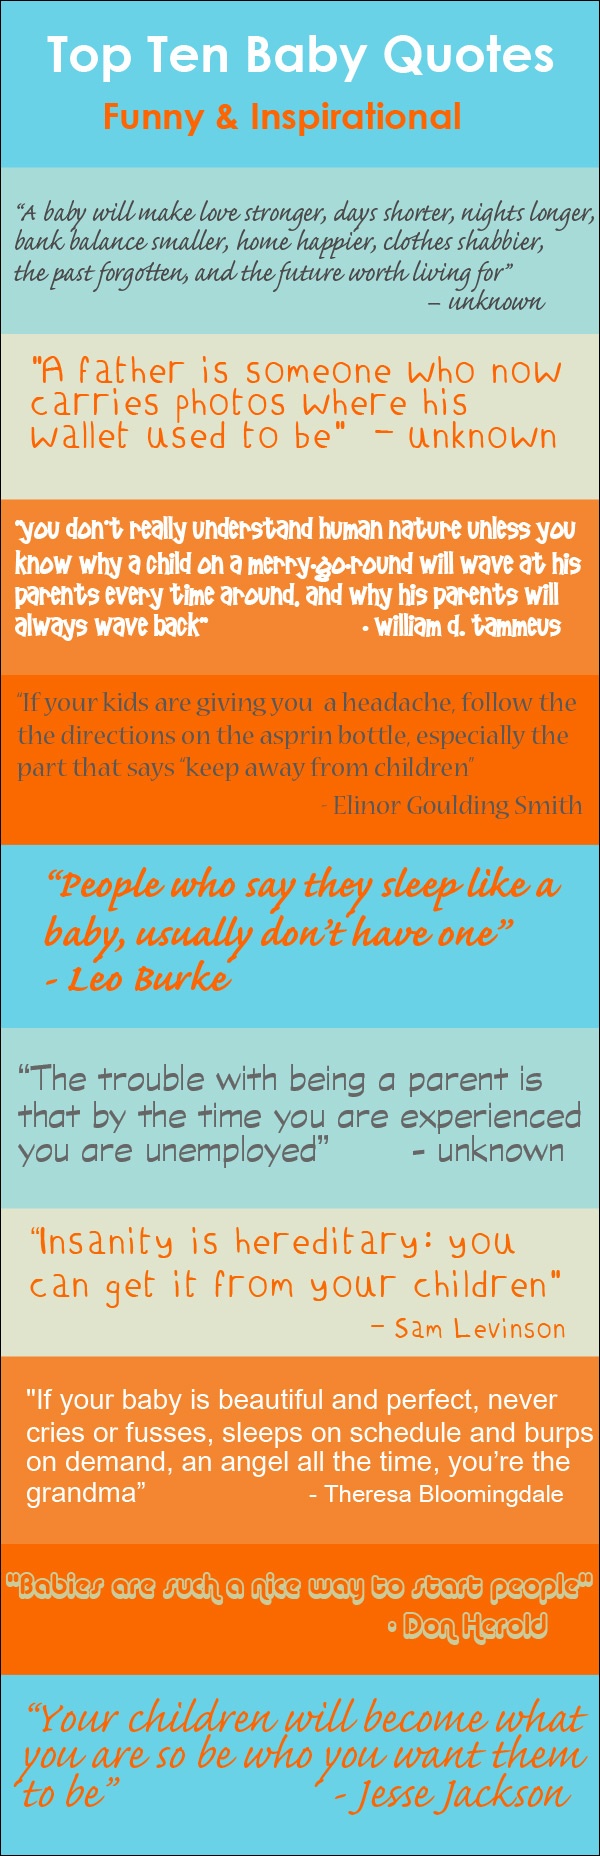 Top Ten Baby Quotes